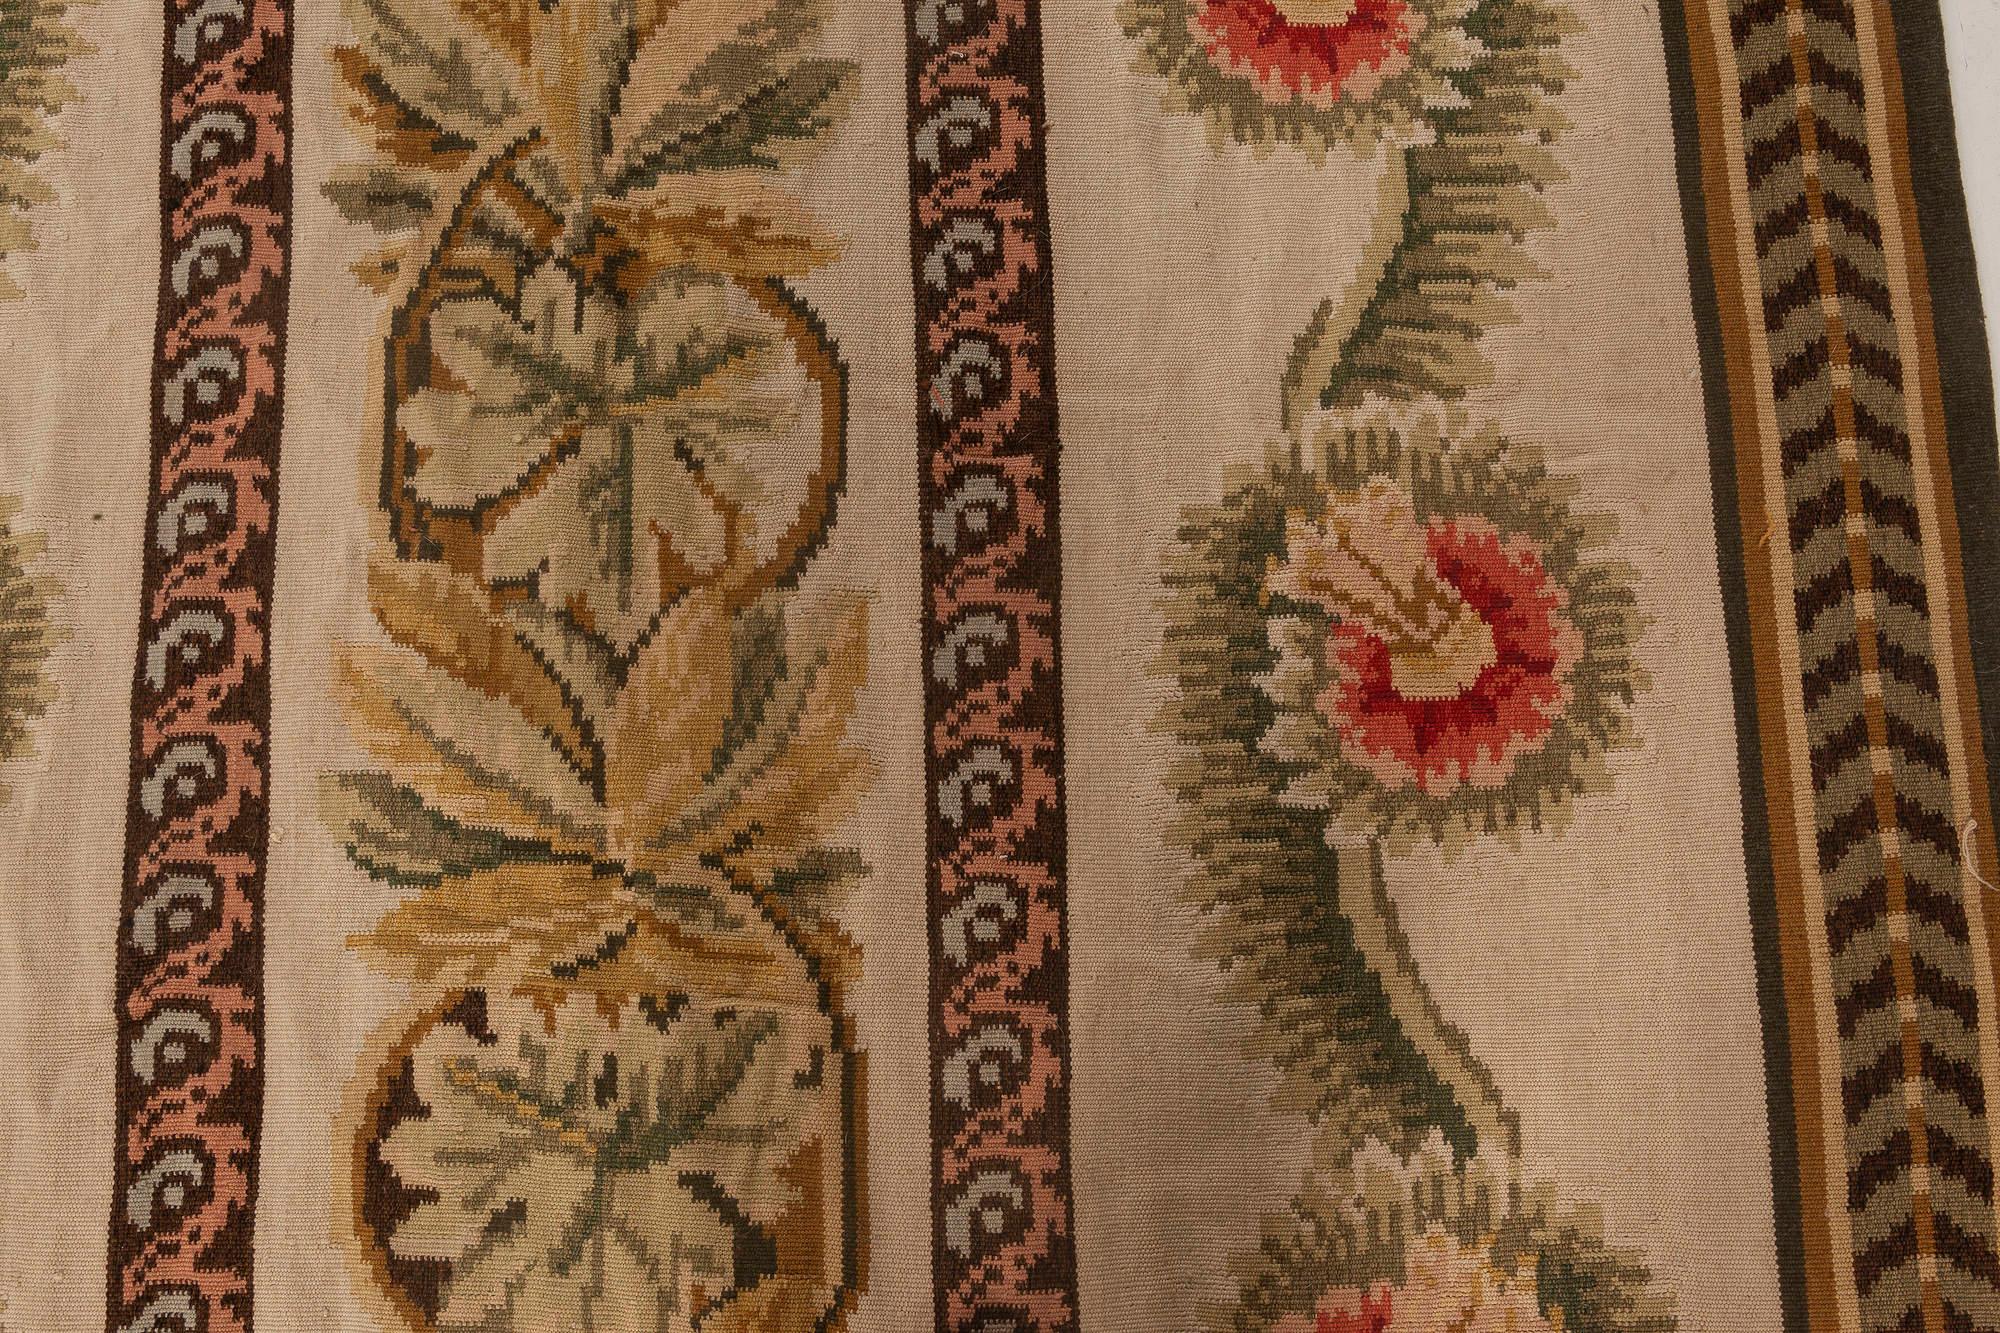 Zeitgenössischer bessarabischer Teppich aus brauner, grüner, roter und weißer flachgewebter Wolle von Doris Leslie Blau mit Blumenmuster
Größe: 12'0